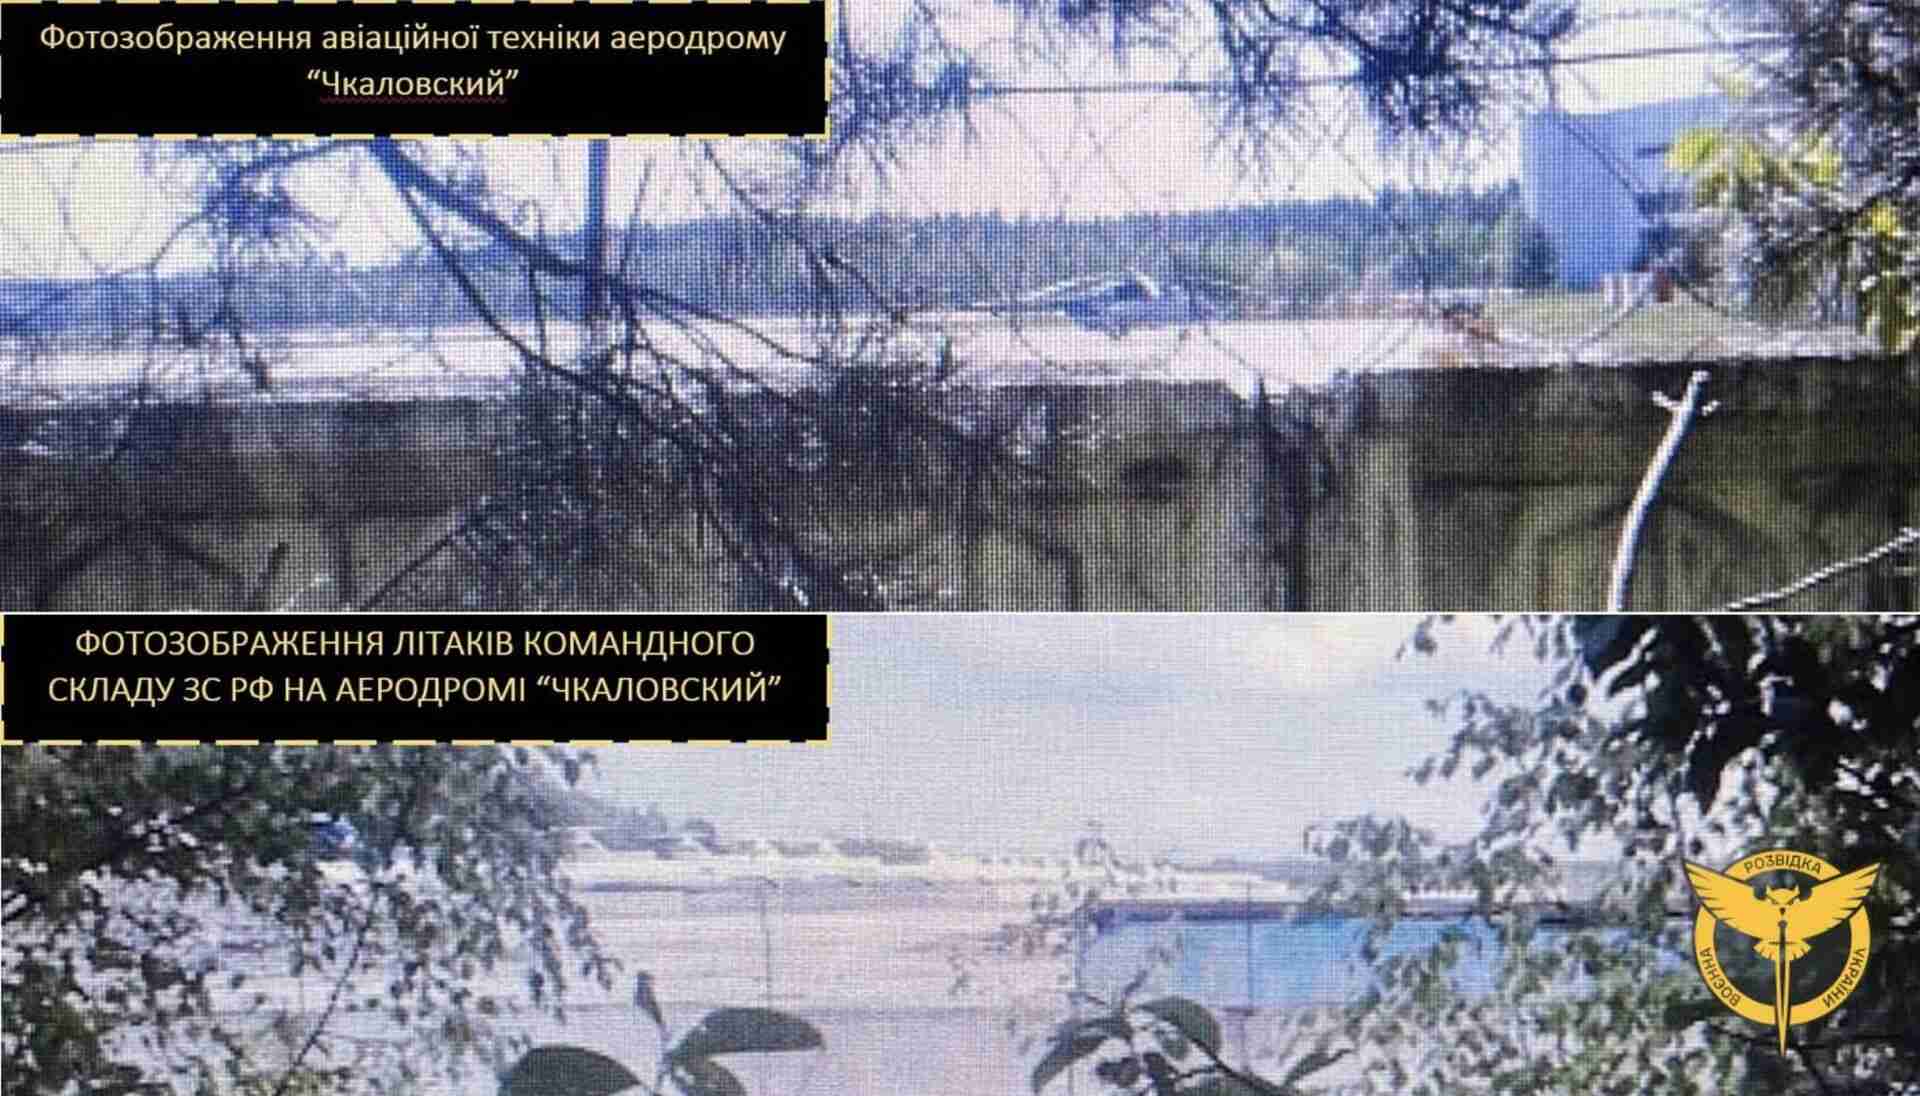 Диверсанти підірвали два літаки та гелікоптер на аеродромі у Підмосковʼї - ГУР (ФОТО)